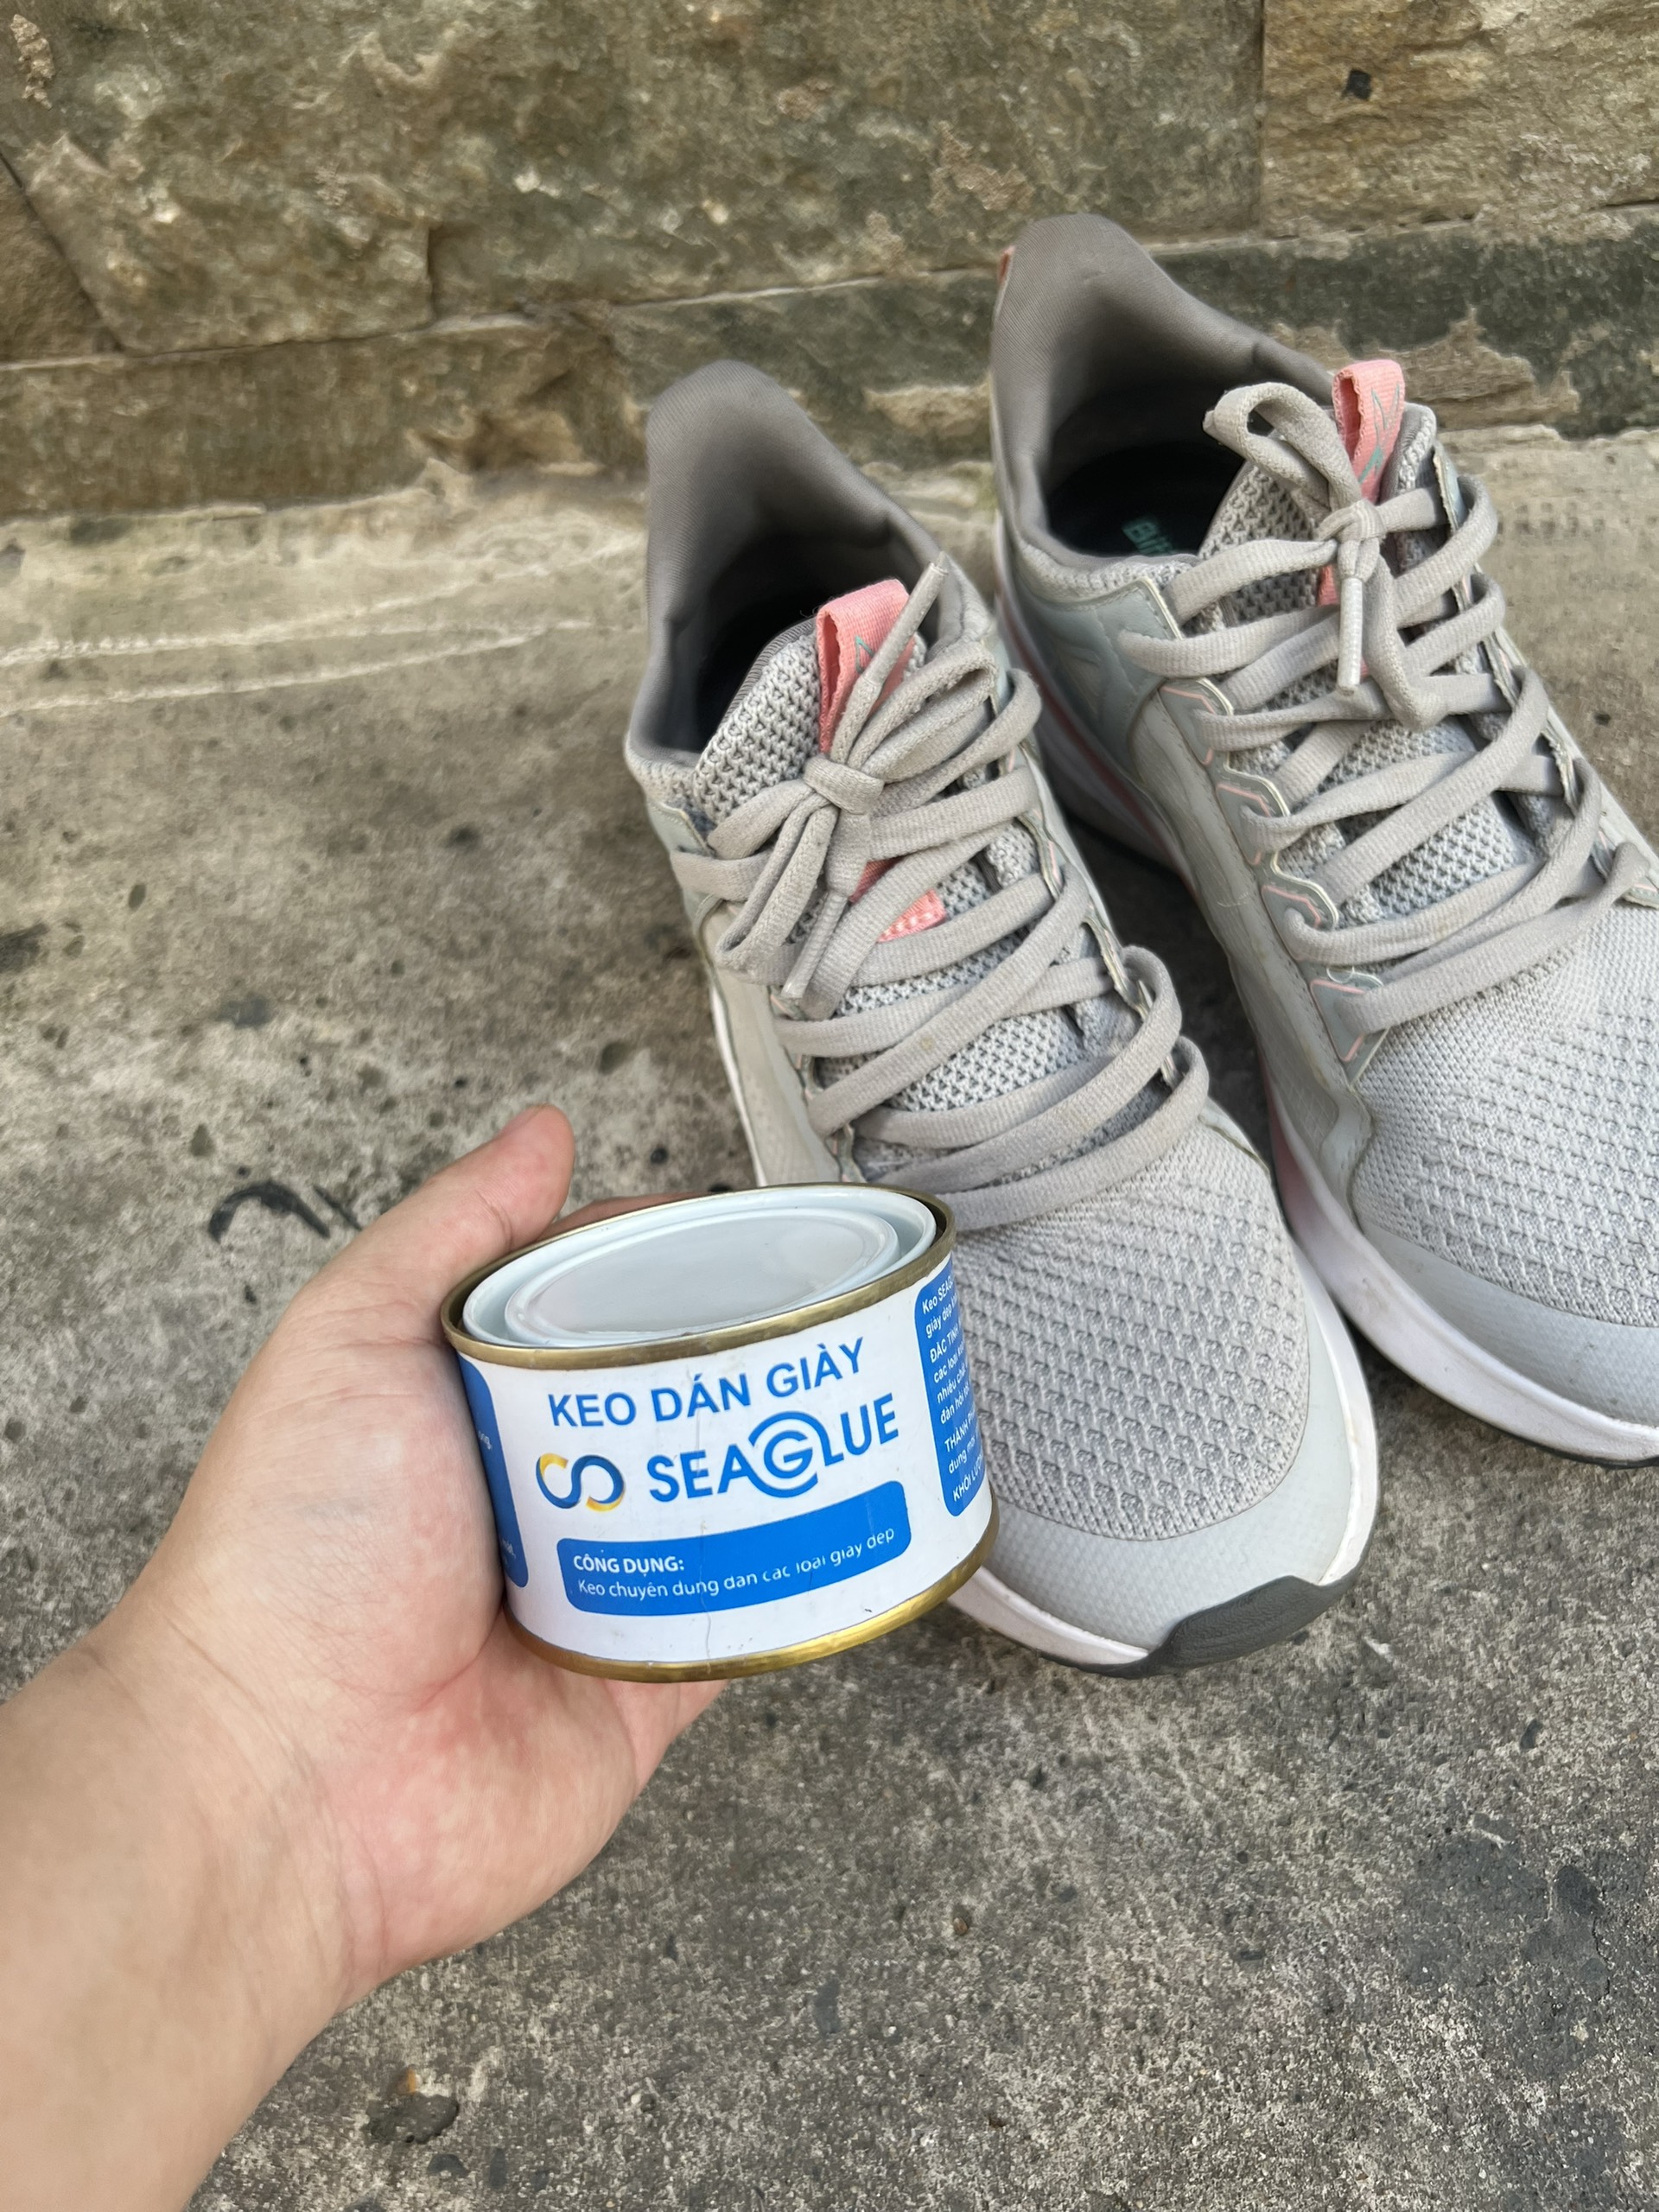 Keo dán giày Seaglue siêu chắc chống nước tốt tặng khăn microfiber BaoAn chính hãng